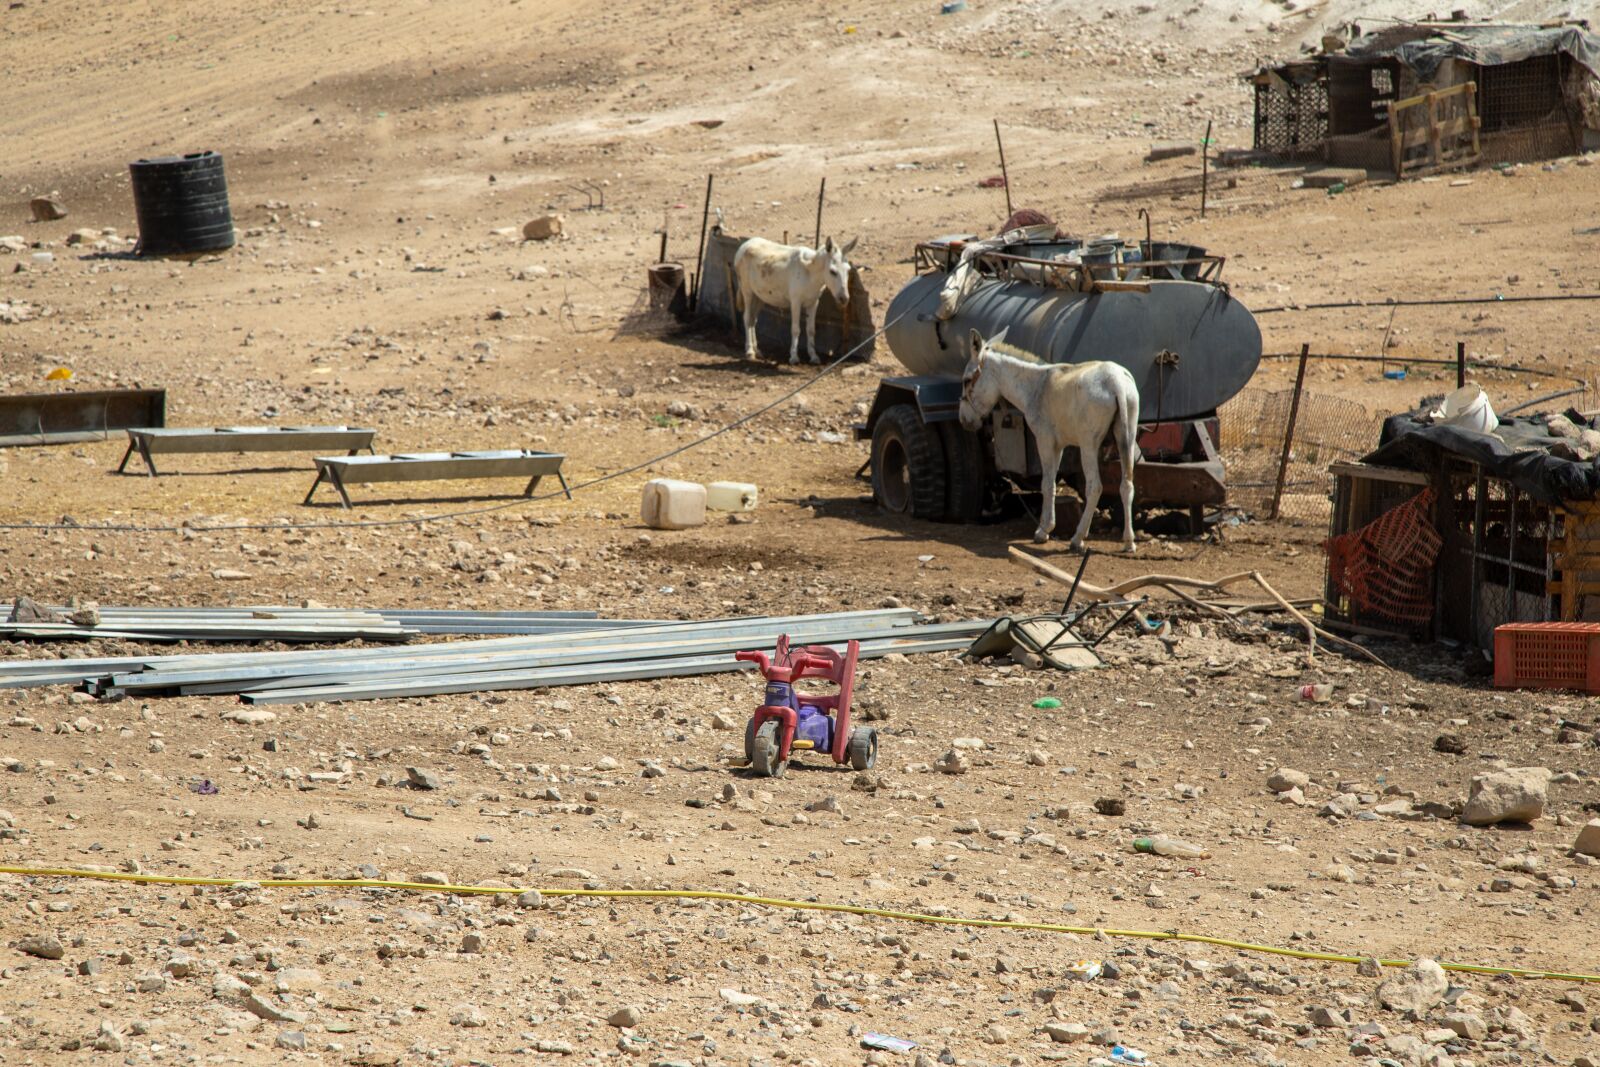 Canon EOS 5D Mark IV sample photo. Nomads, nomadic lifestyle, bedouin photography